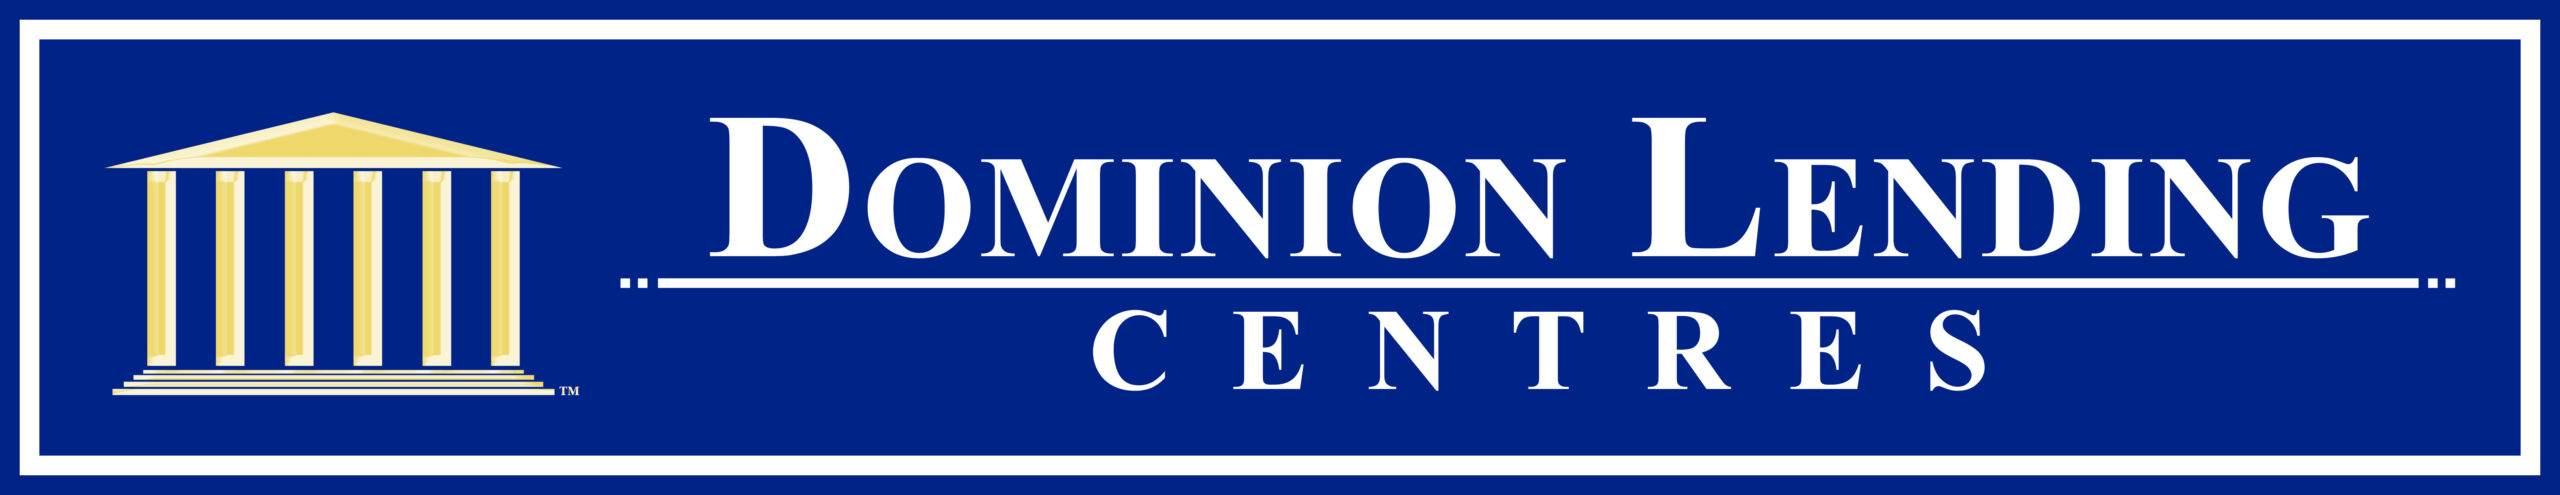 Dominion Lending Centers